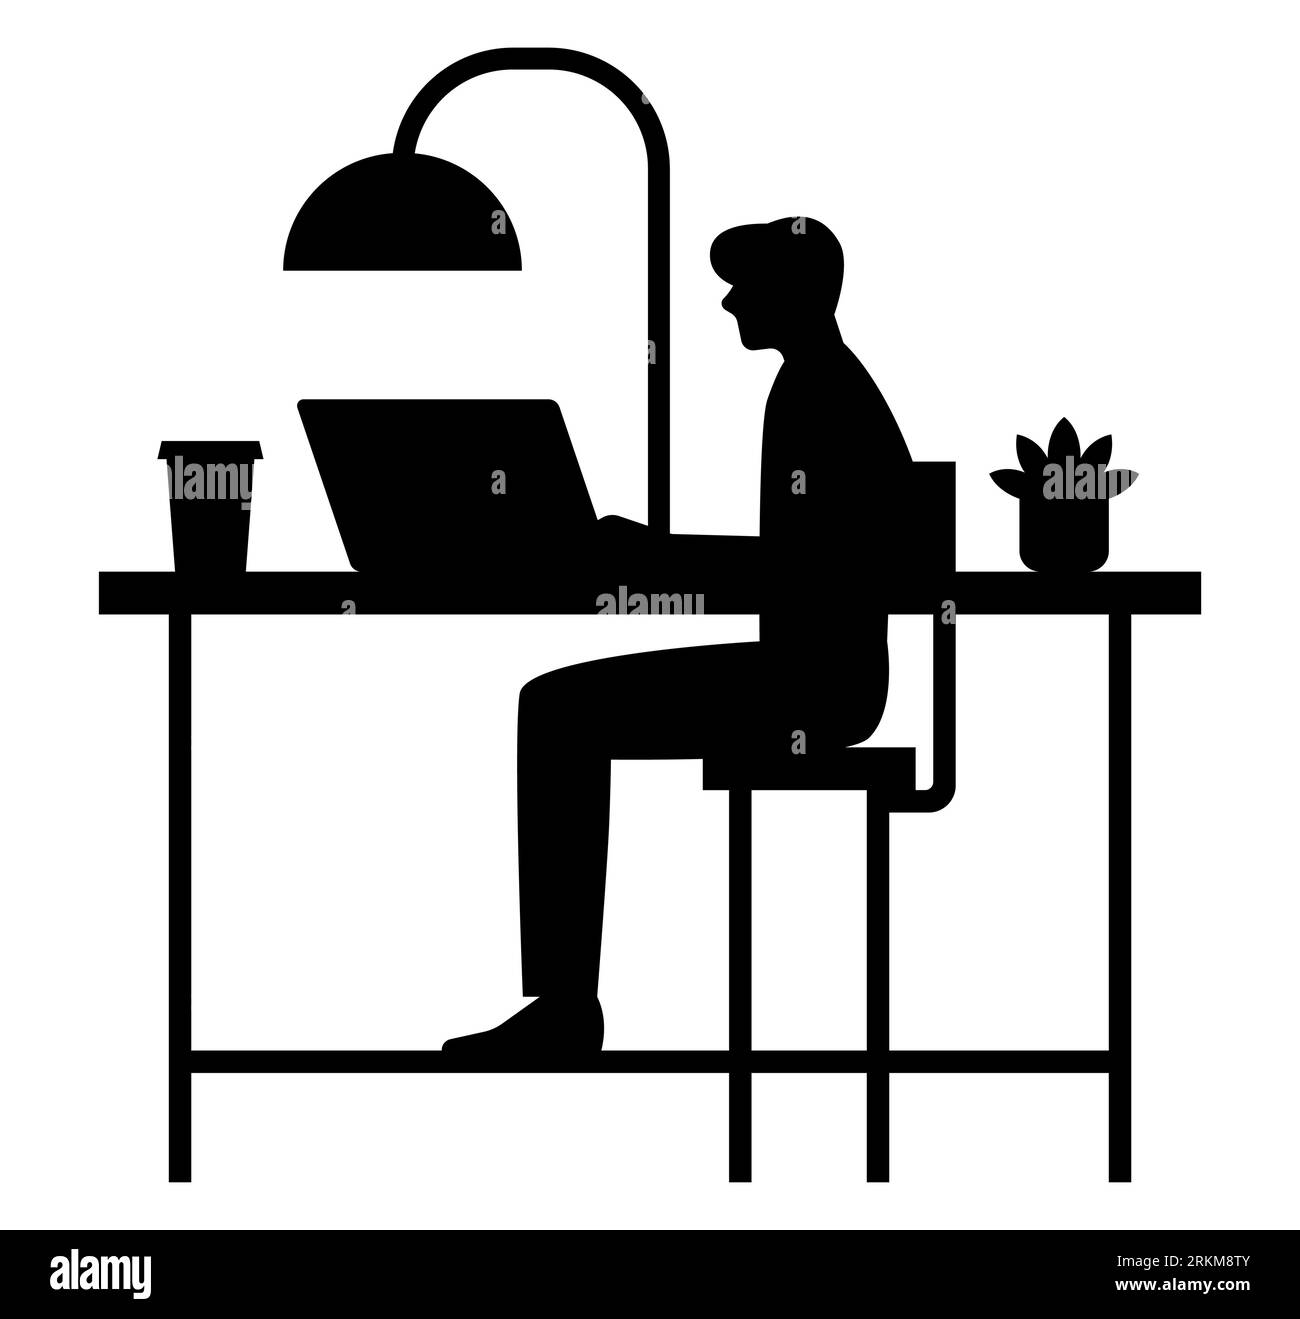 Silueta negra de un hombre que trabaja en una computadora portátil, un hombre en el ámbito digital, la tecnología y el estilo de vida moderno, ilustración vectorial sobre fondo blanco Ilustración del Vector